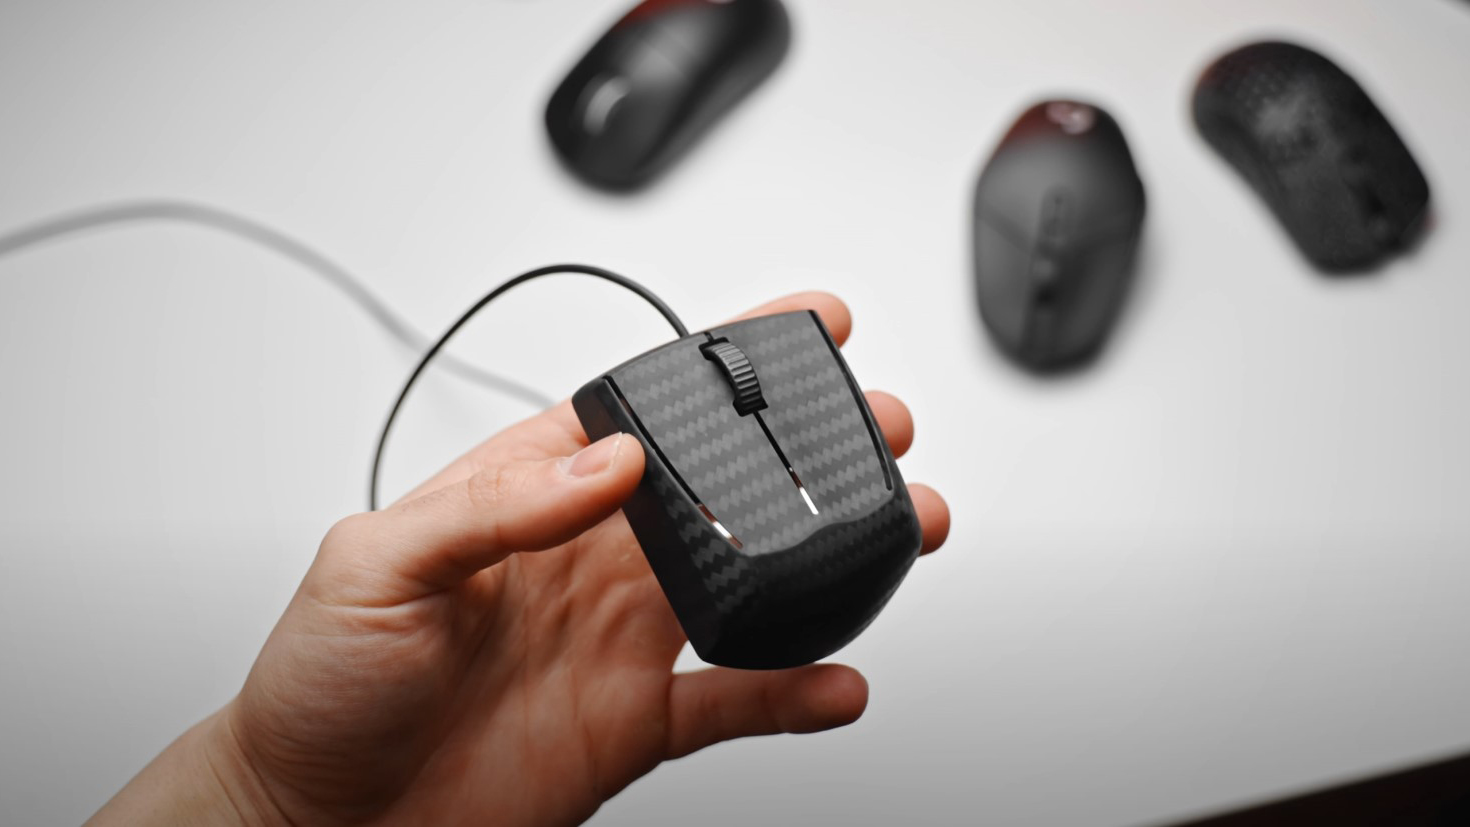 World's Lightest Gaming Mouse Boasts Carbon Fiber Design | Tom's